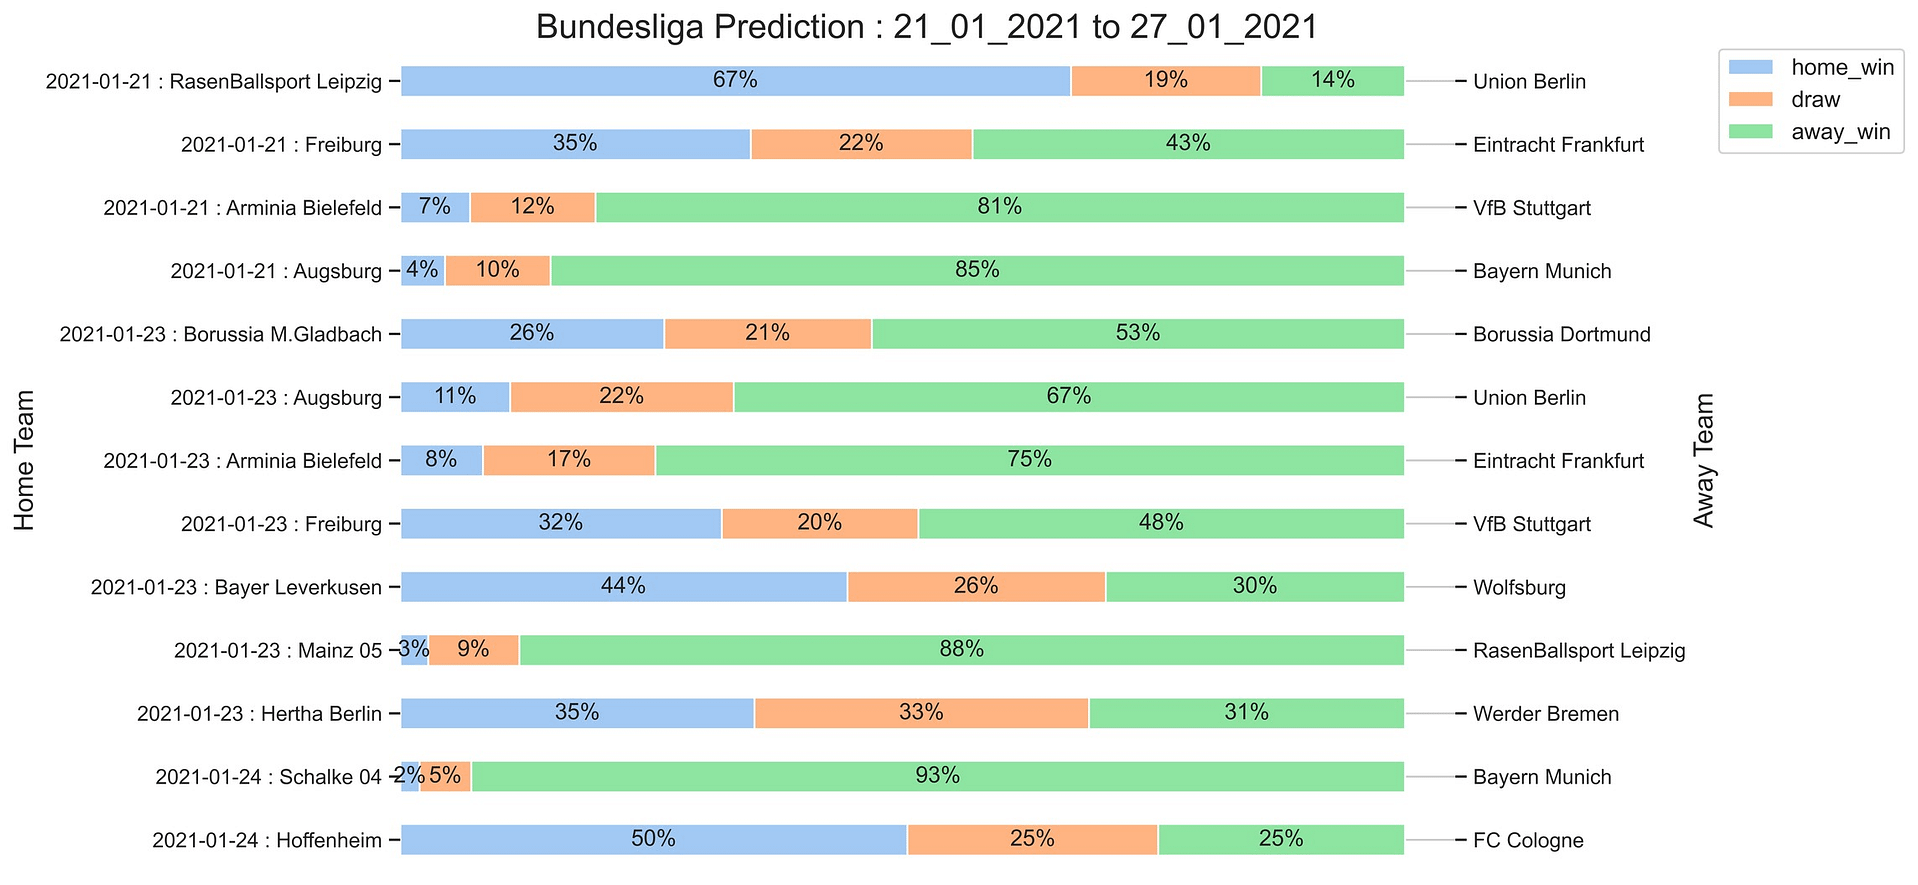 Bundesliga_Prediction 21_01_2021